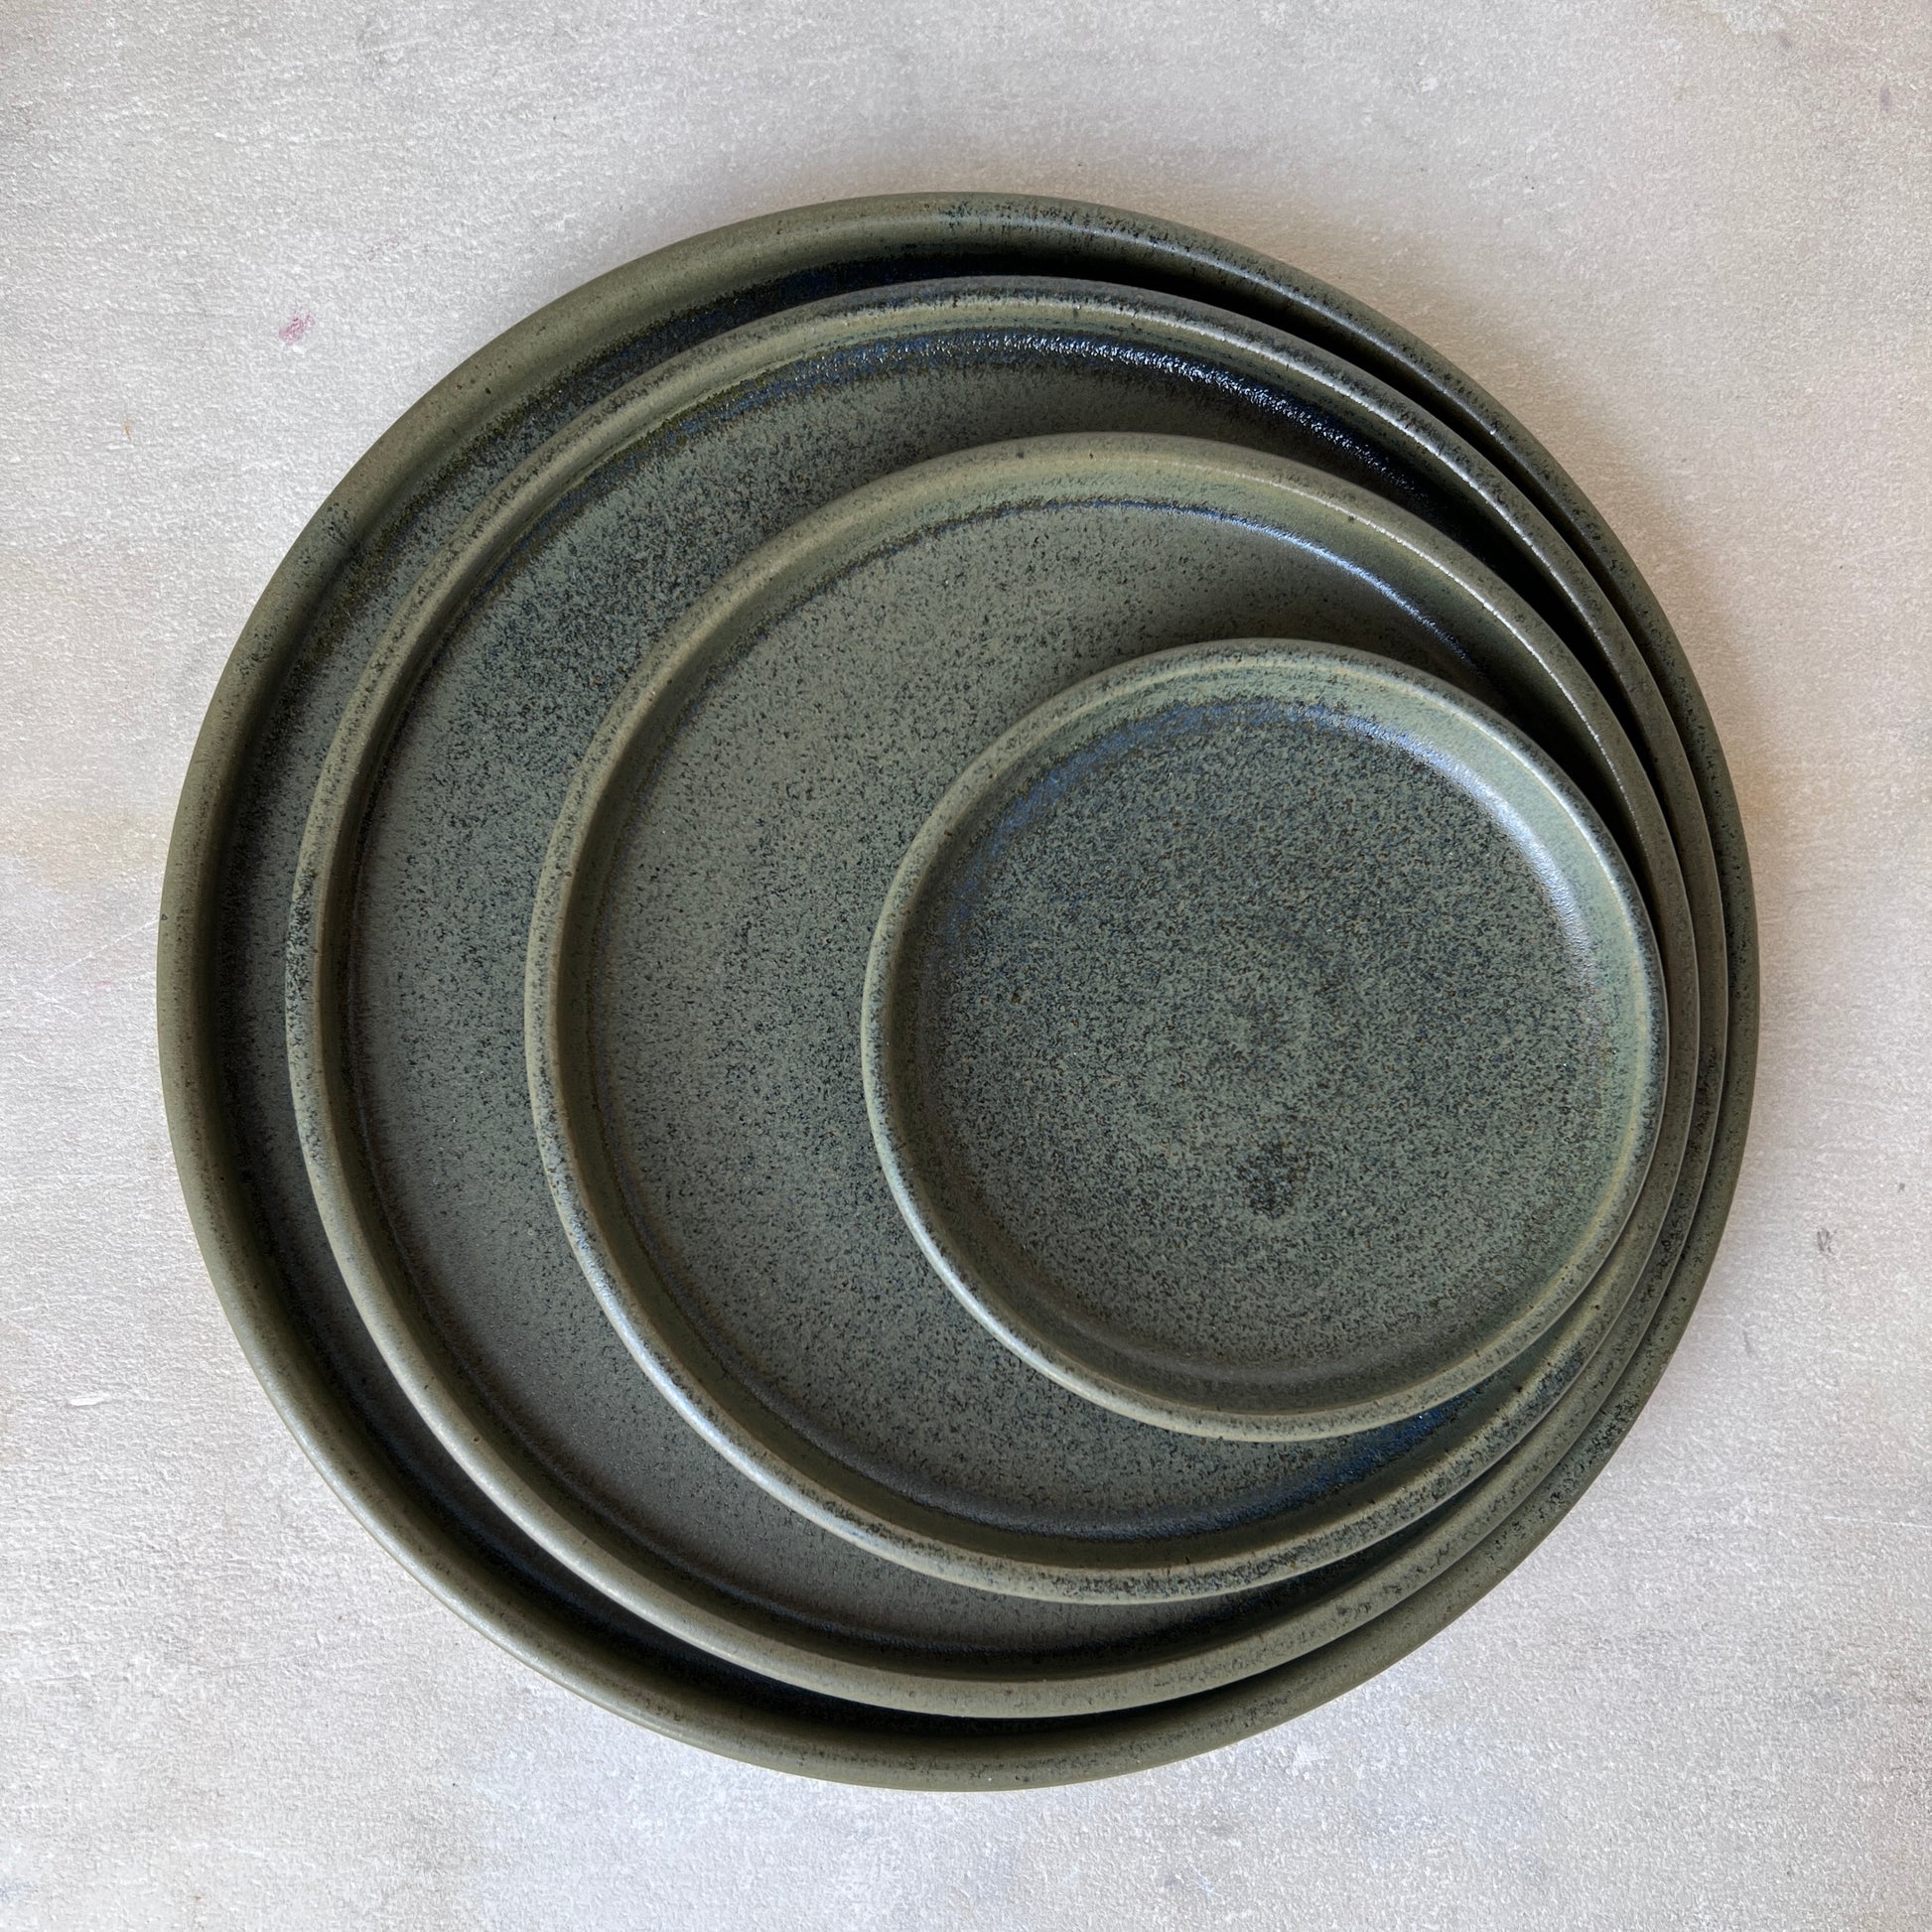 Grøn keramik tallerken i stentøj